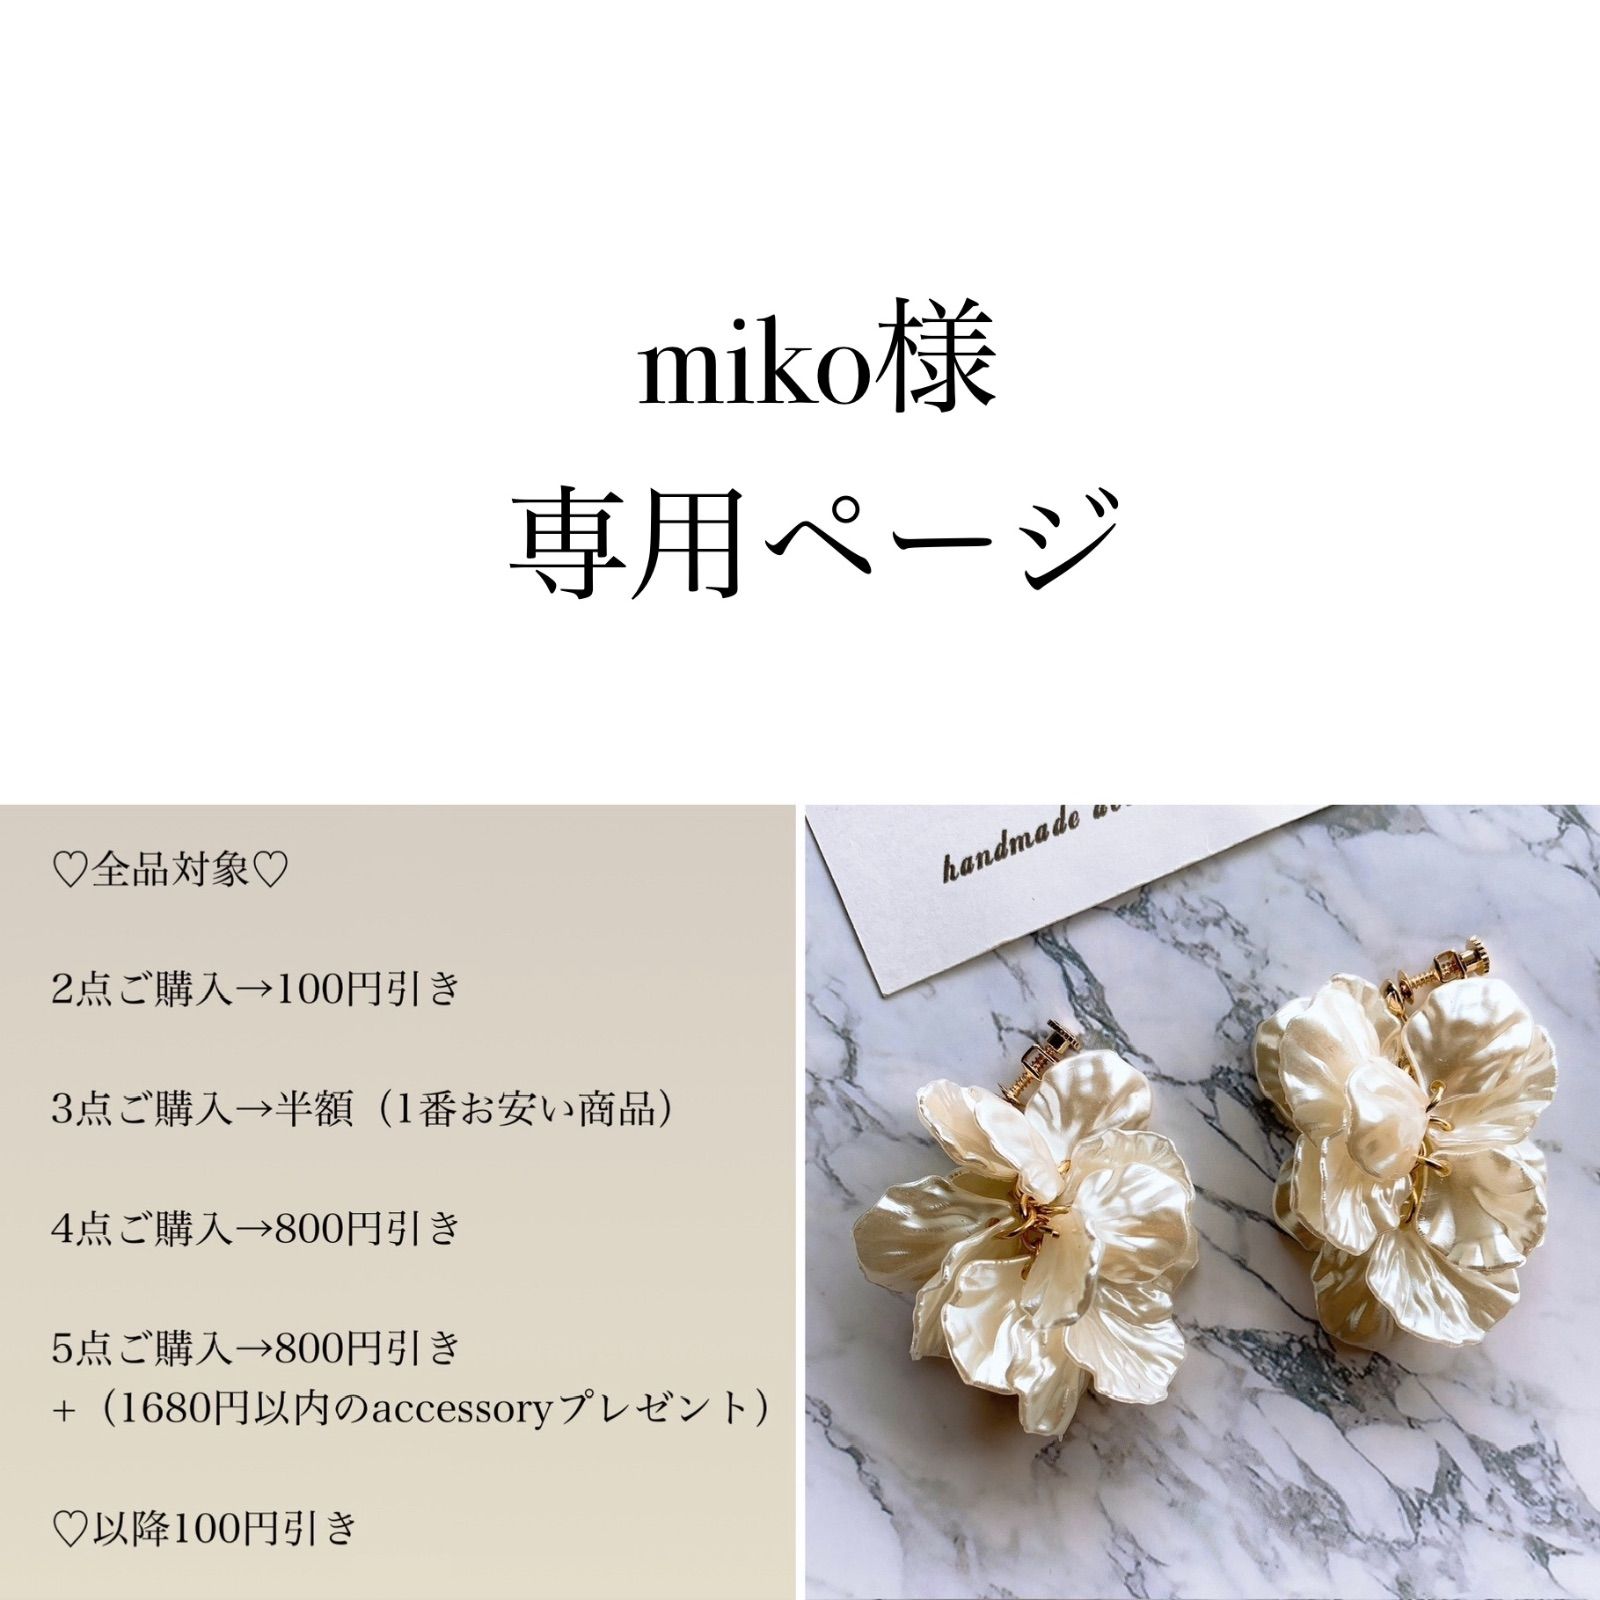 miko様♡専用ページ〔ネジバネイヤリング〕 - メルカリ